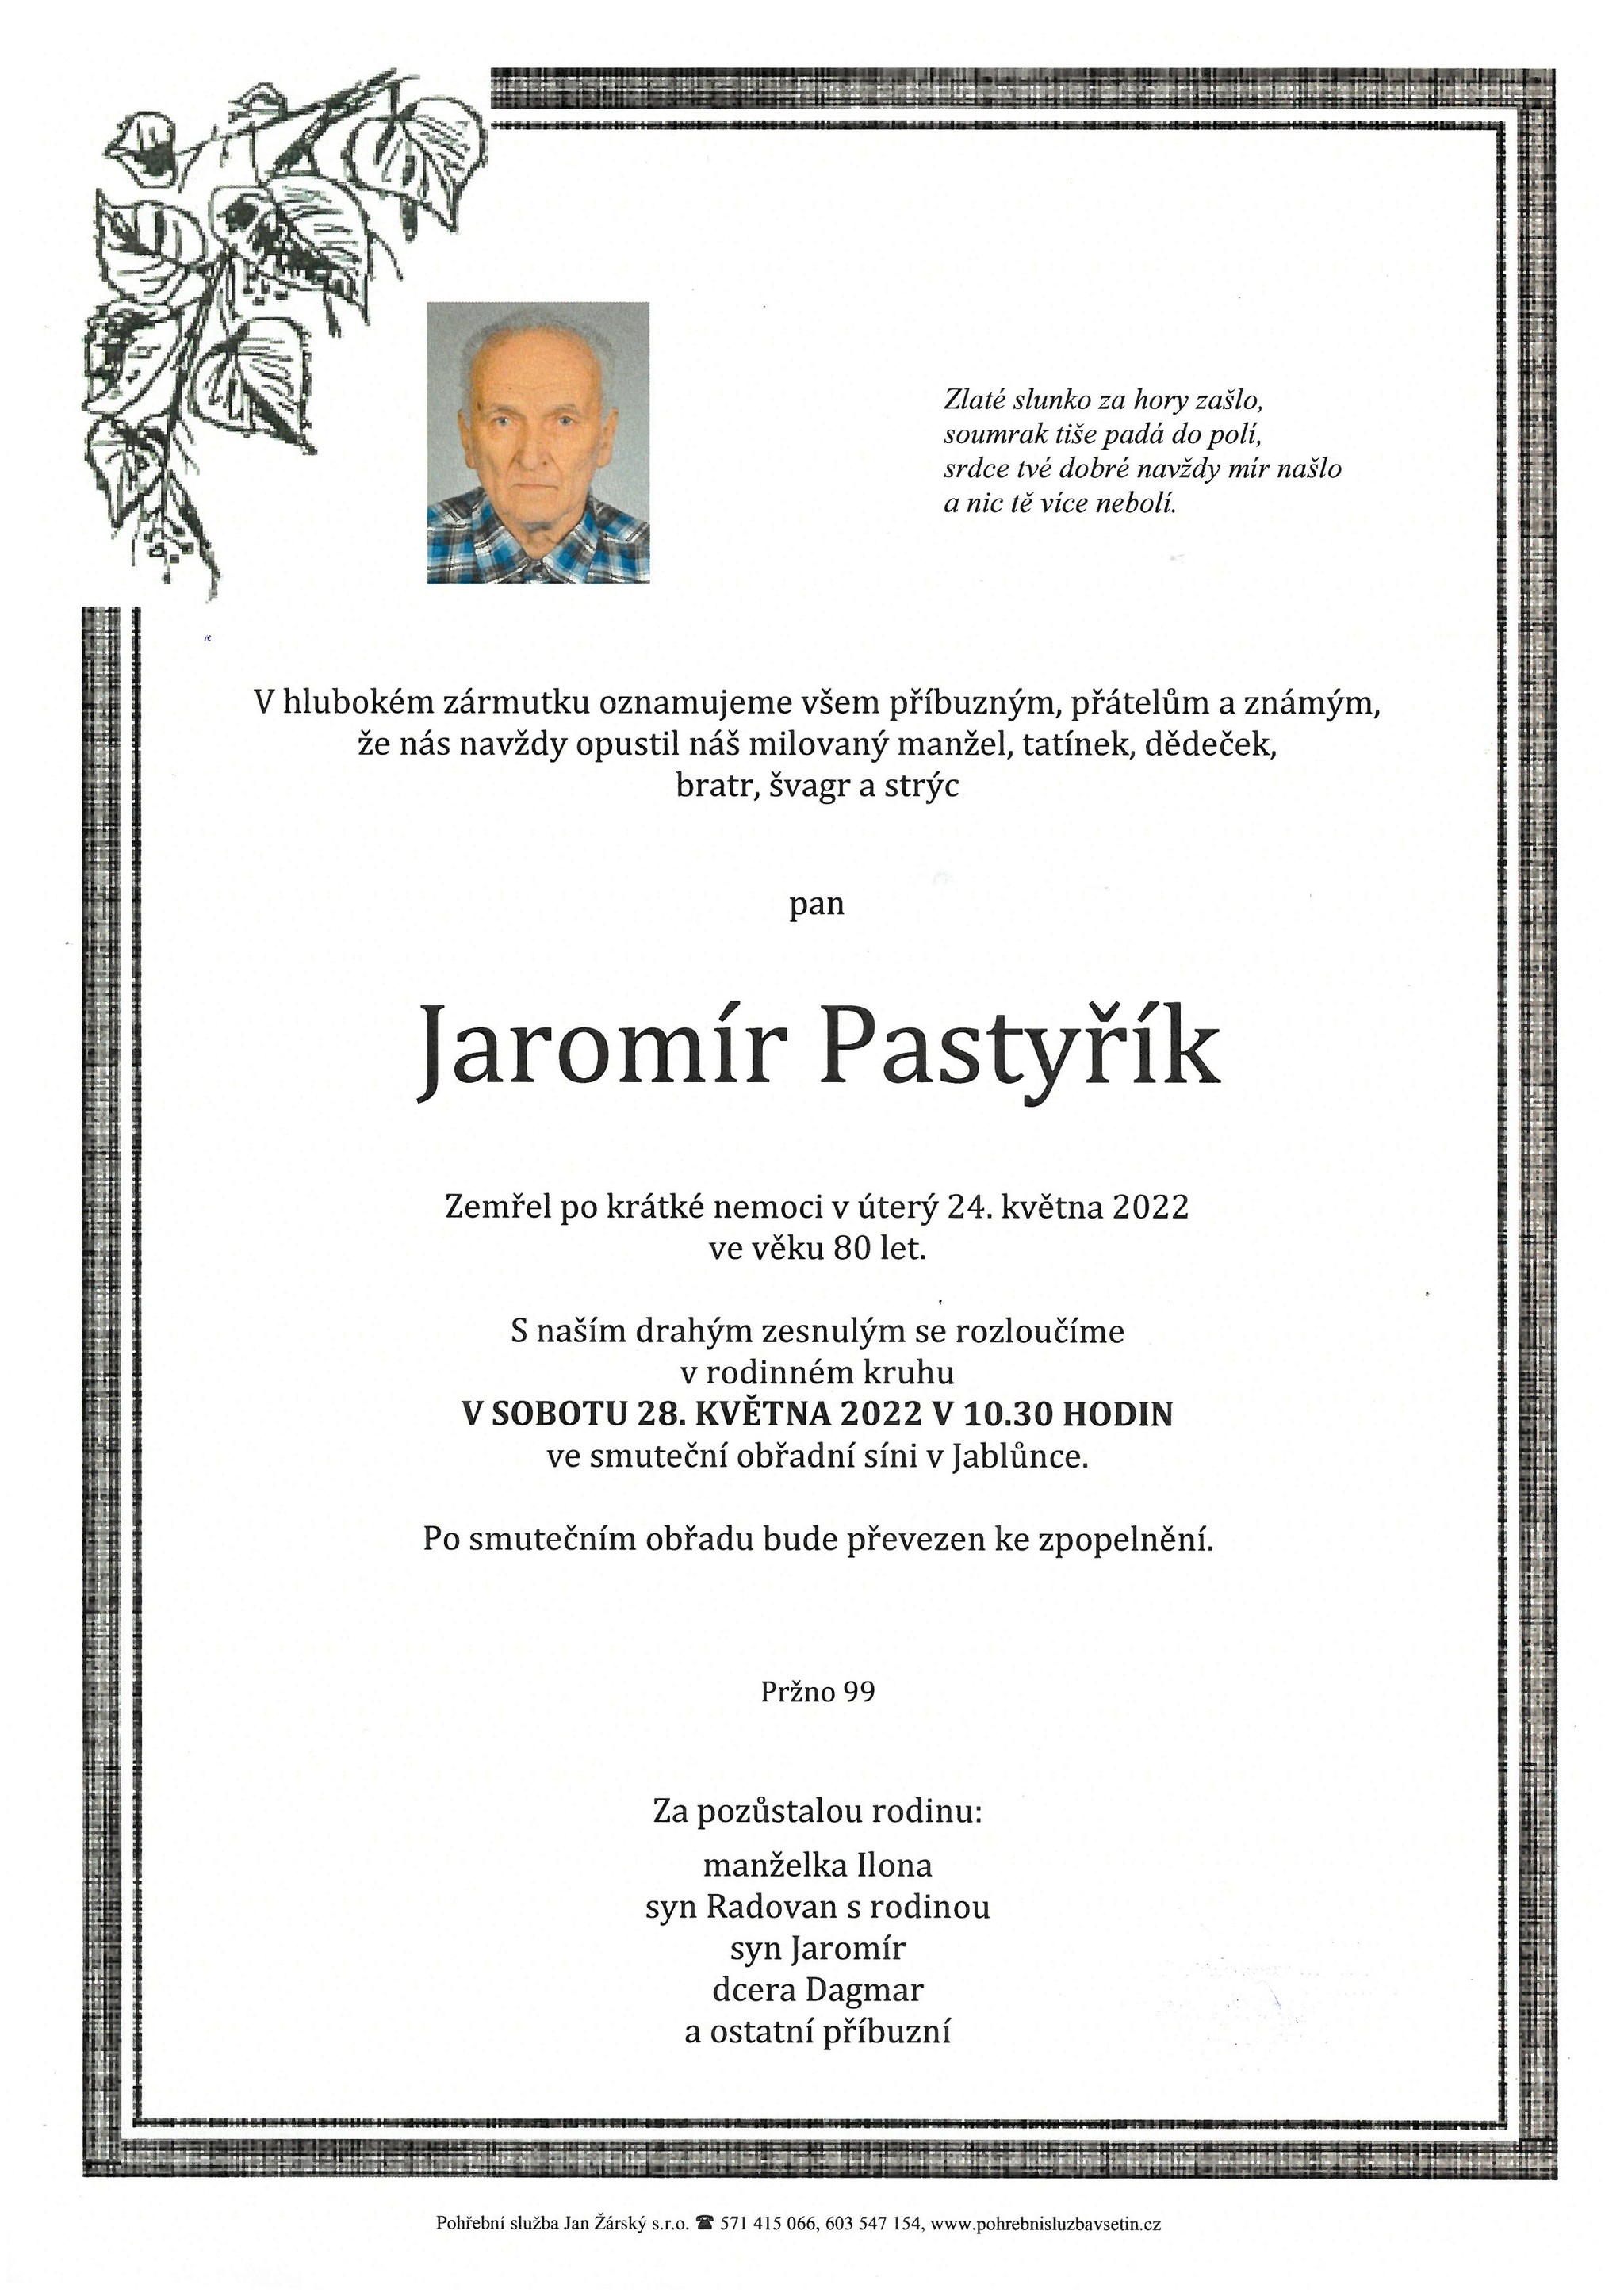 Jaromír Pastyřík